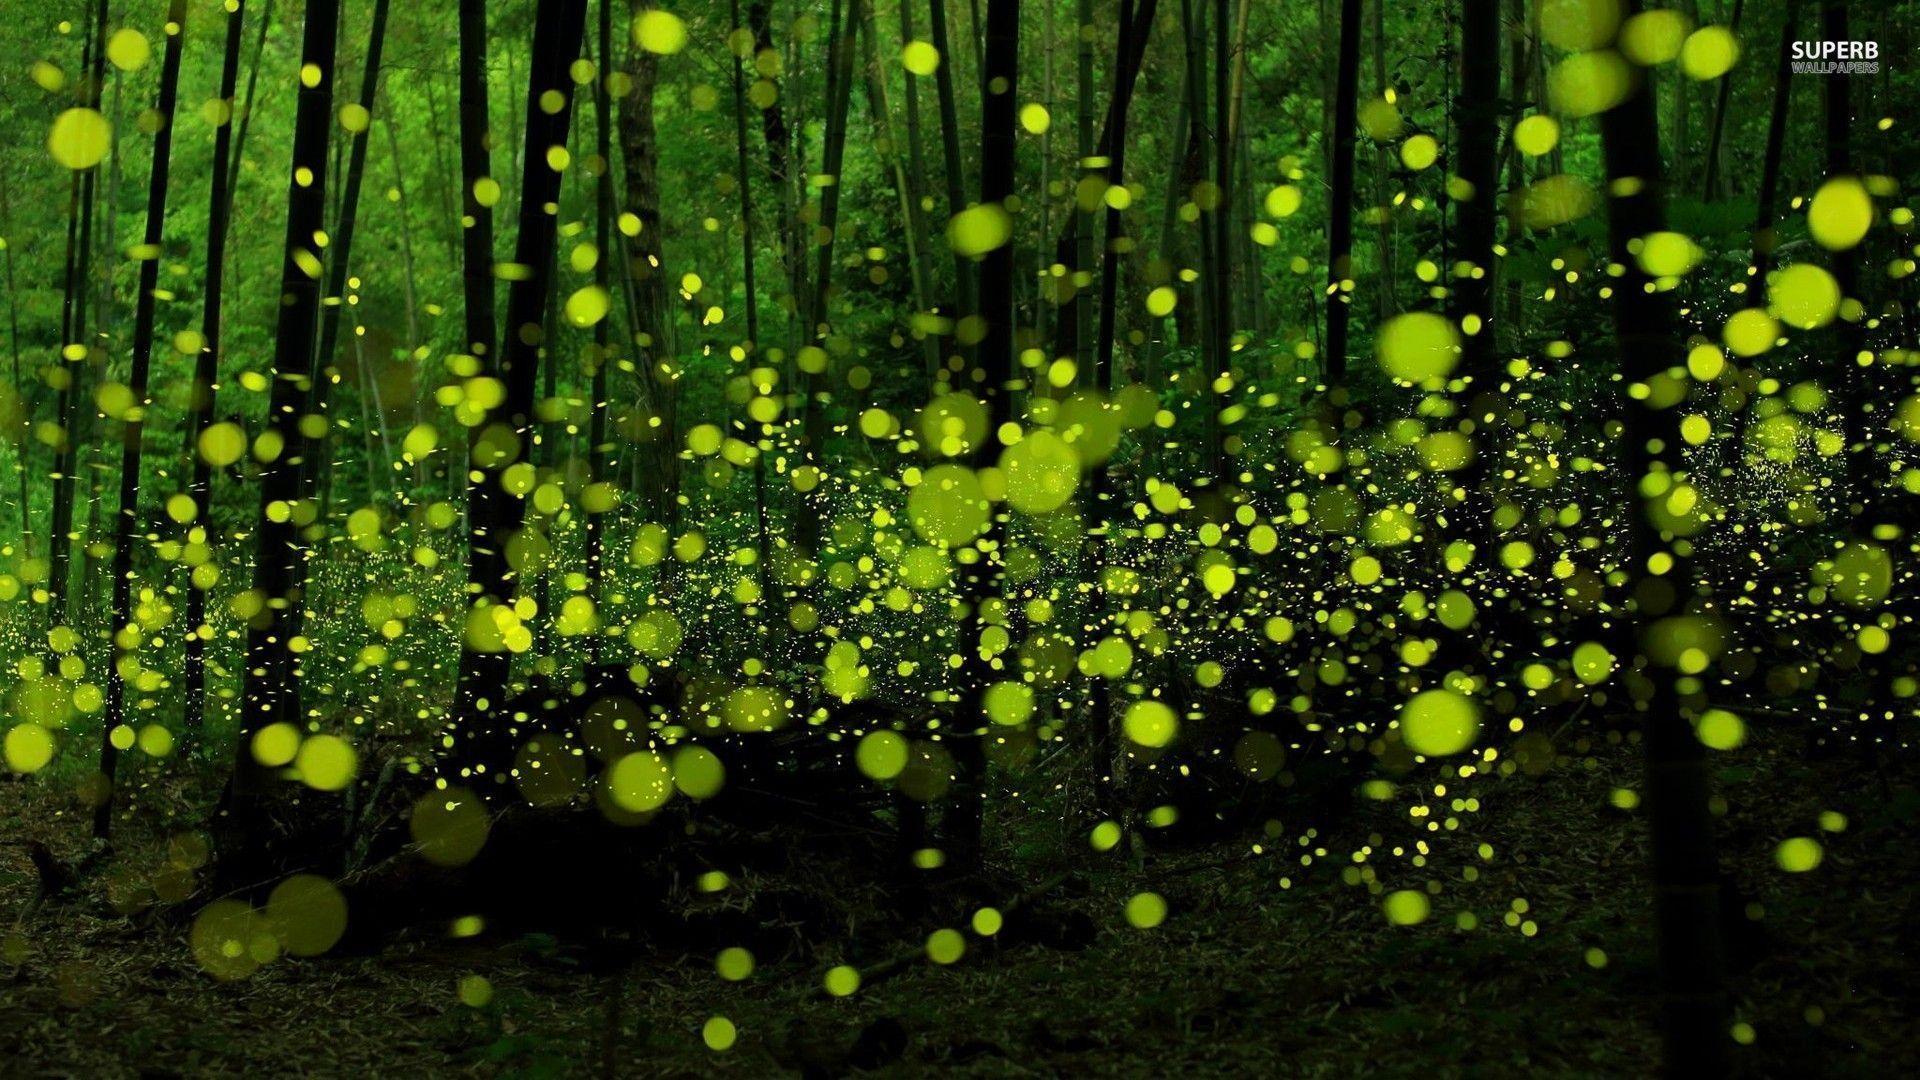 Wallpaper Fireflies Wallpapers